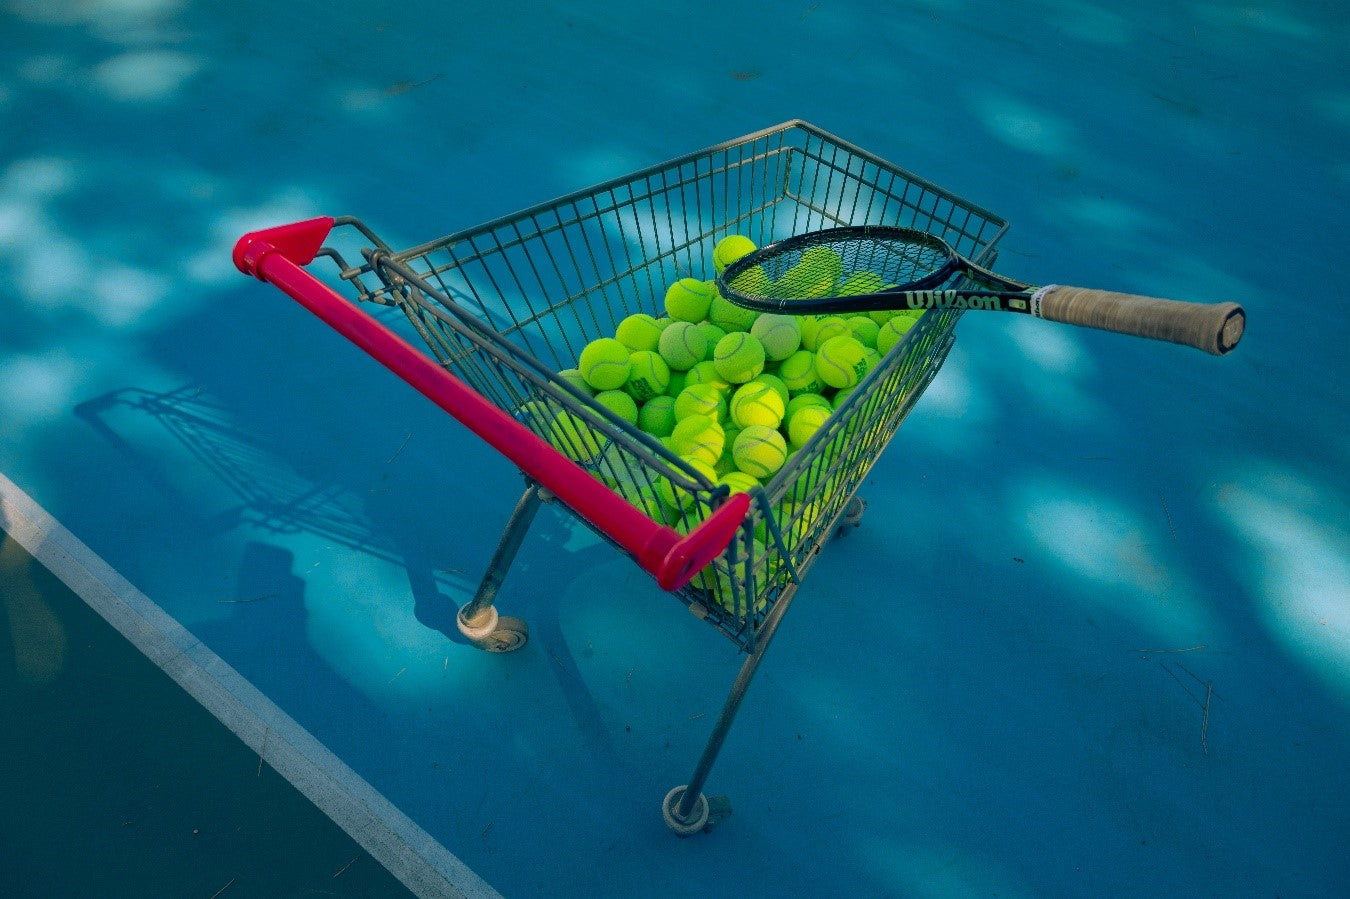 Para qué las pelotas de tenis presión? – Ball Rescuer